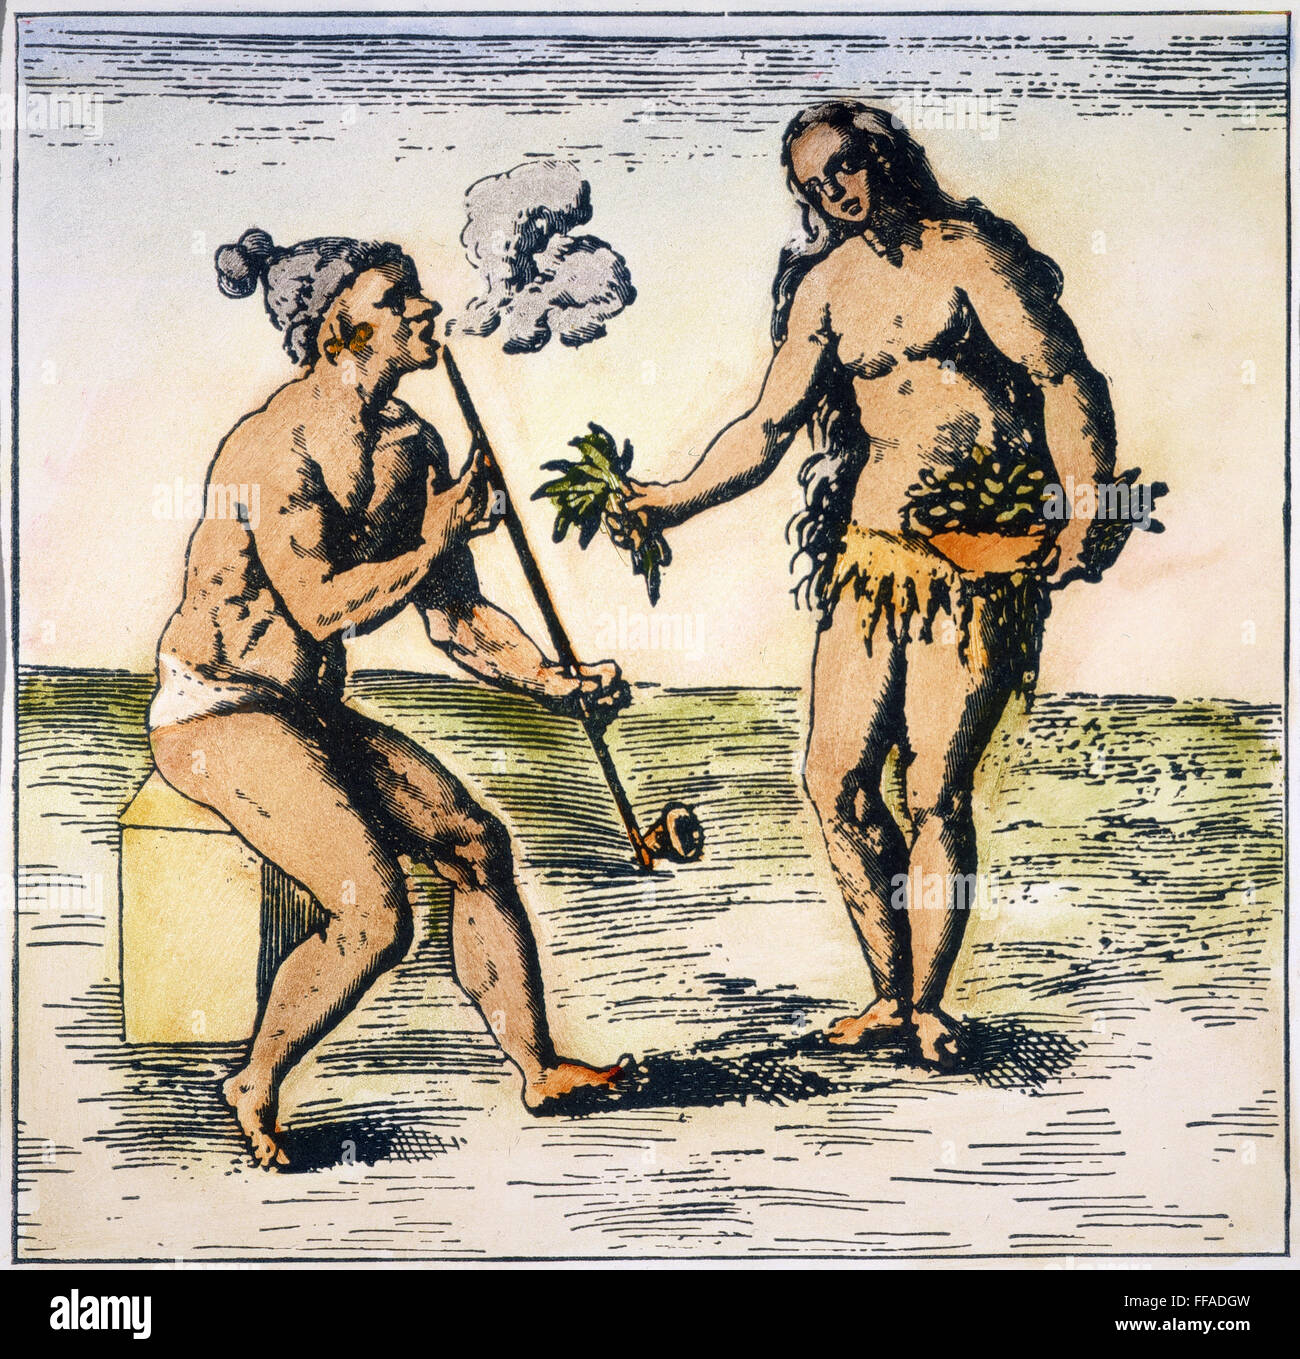 DE BRY: FLORIDA NATIVE AMERICANS. / nA Florida Native American raucht eine Pfeife. Detail einer Gravur, 1591 von Theodor de Bry. Stockfoto